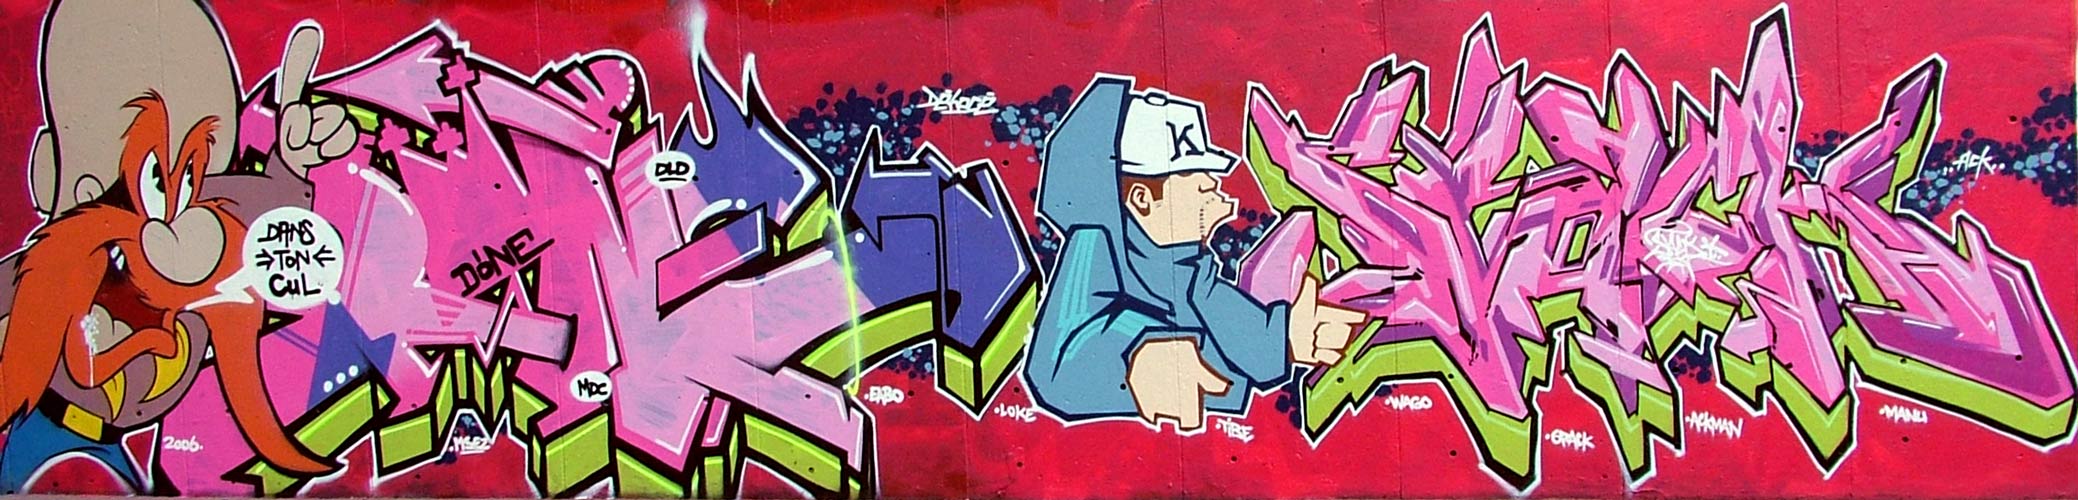 cartoon_graffiti-big